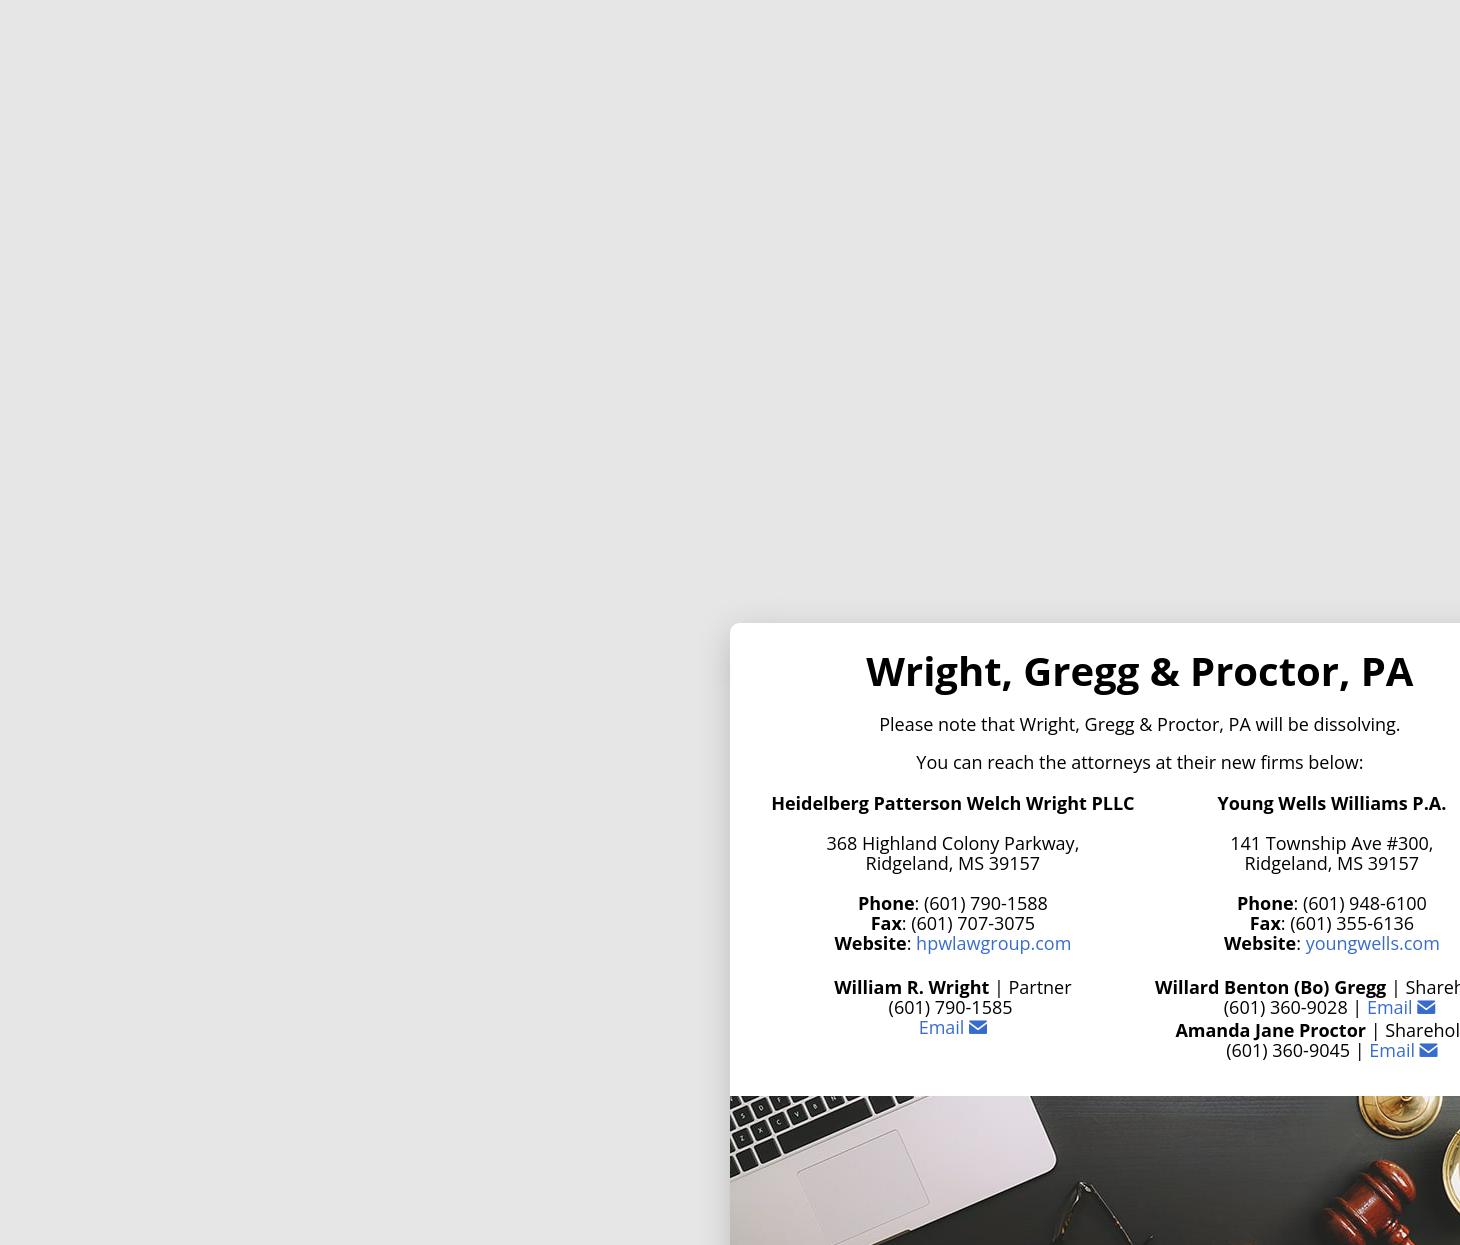 Wright Law Firm - Ridgeland MS Lawyers